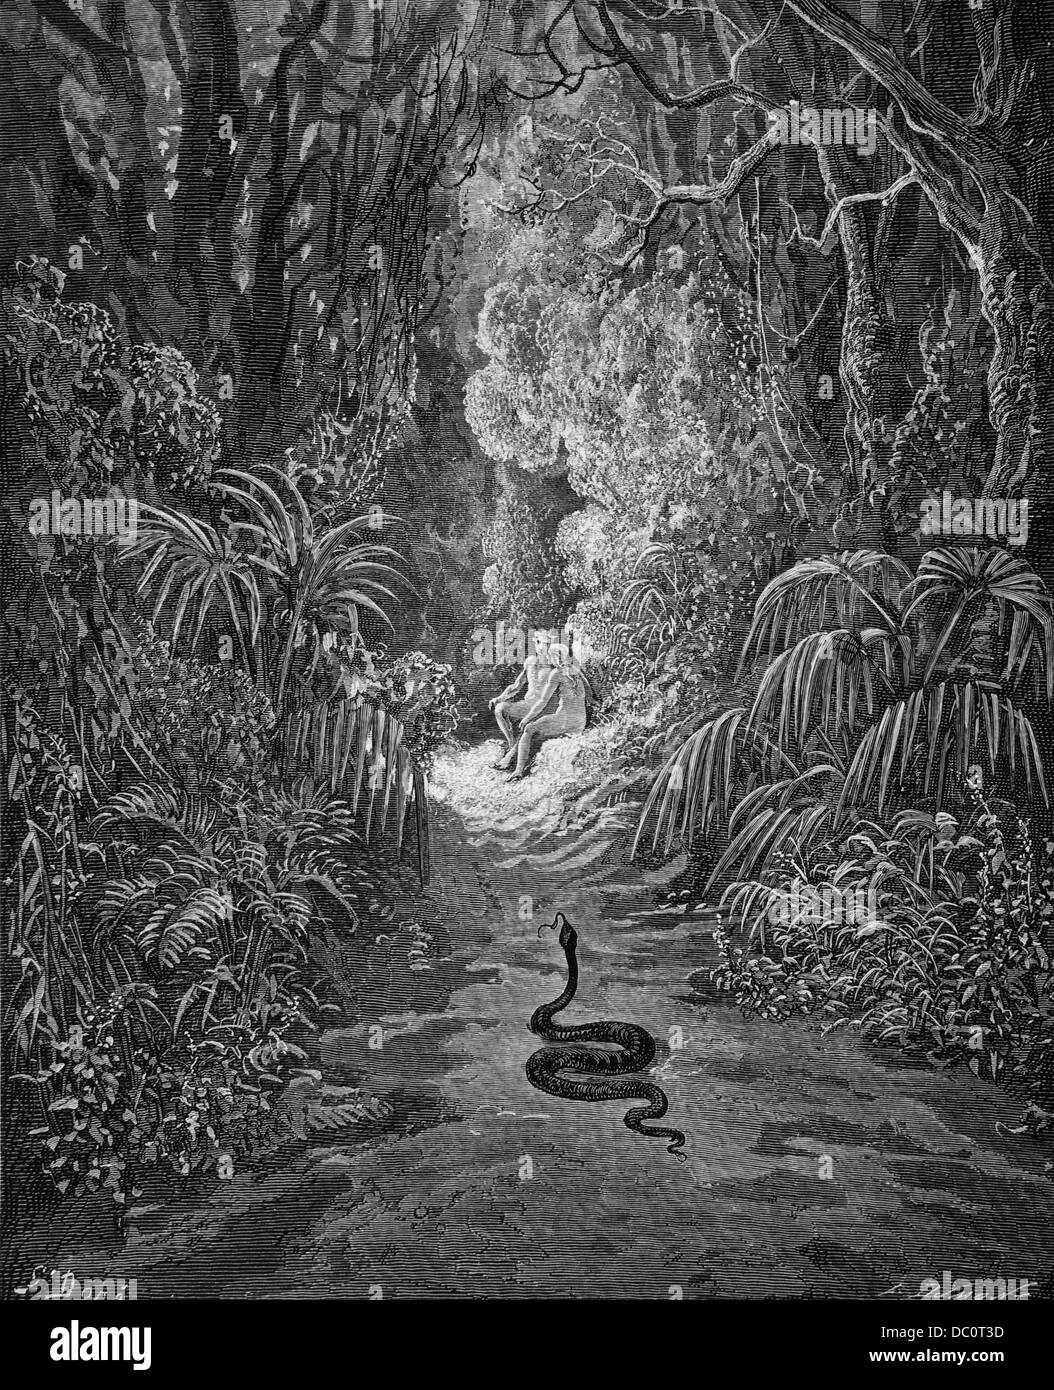 Adam Und Eva Und Schlange Schlange Im Garten Eden Von Gustav Dore Stockfotografie Alamy